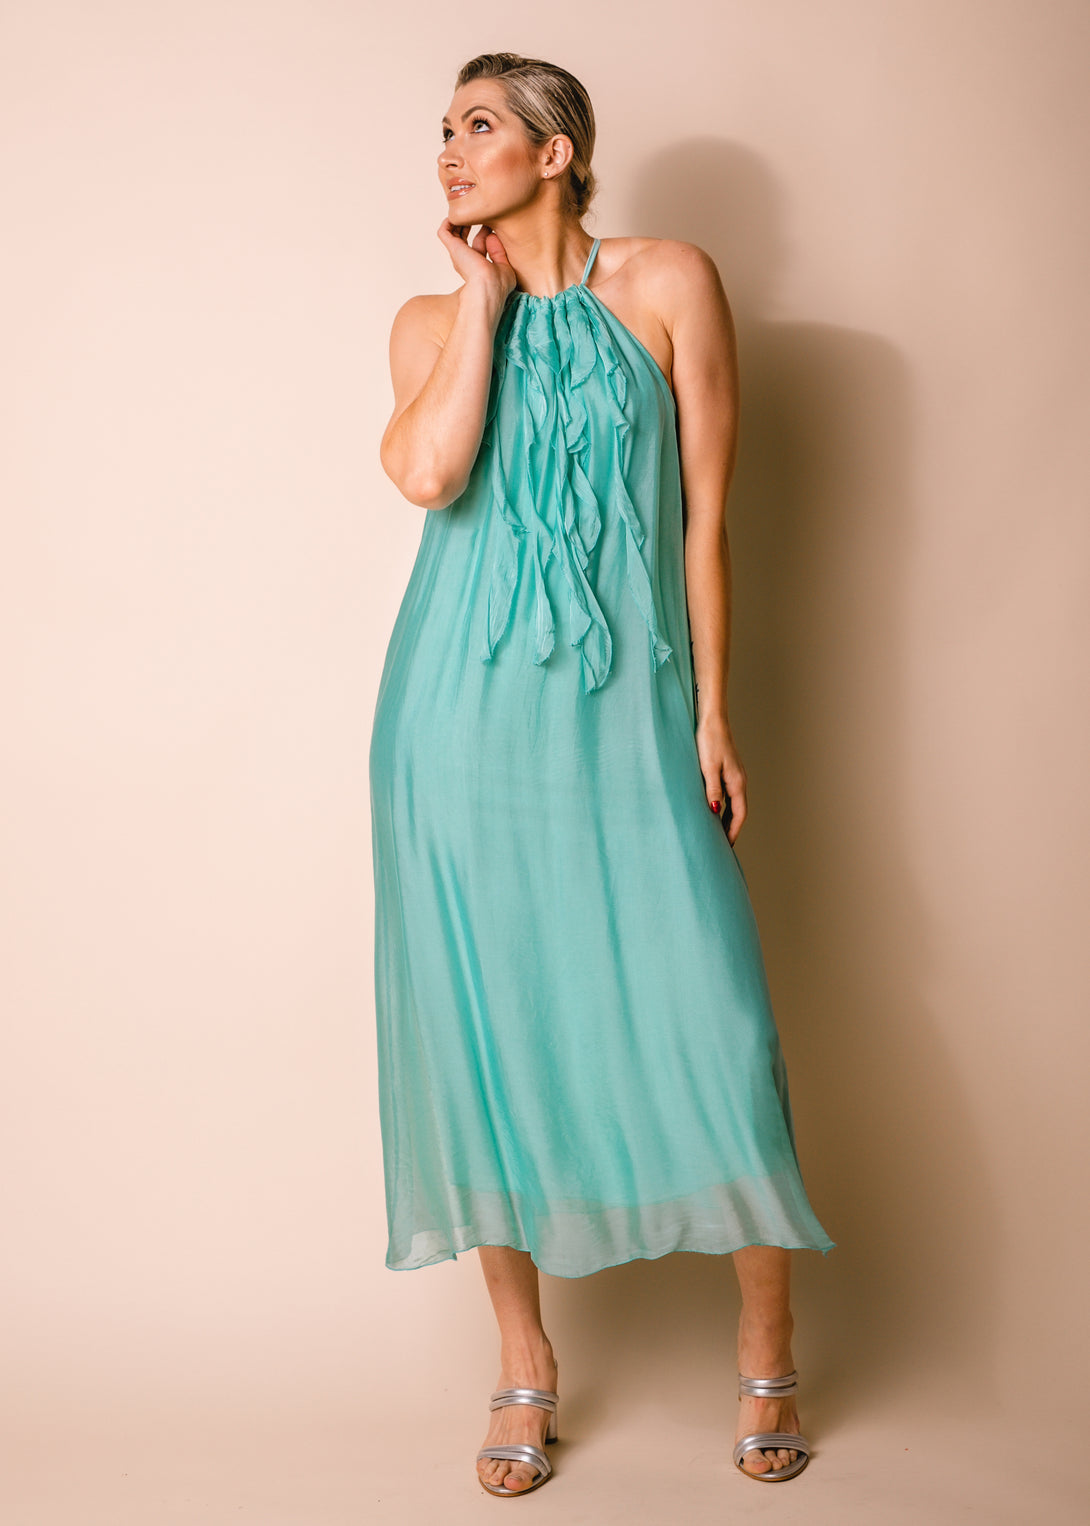 Cadence Silk Dress in Sea Green - Imagine Fashion